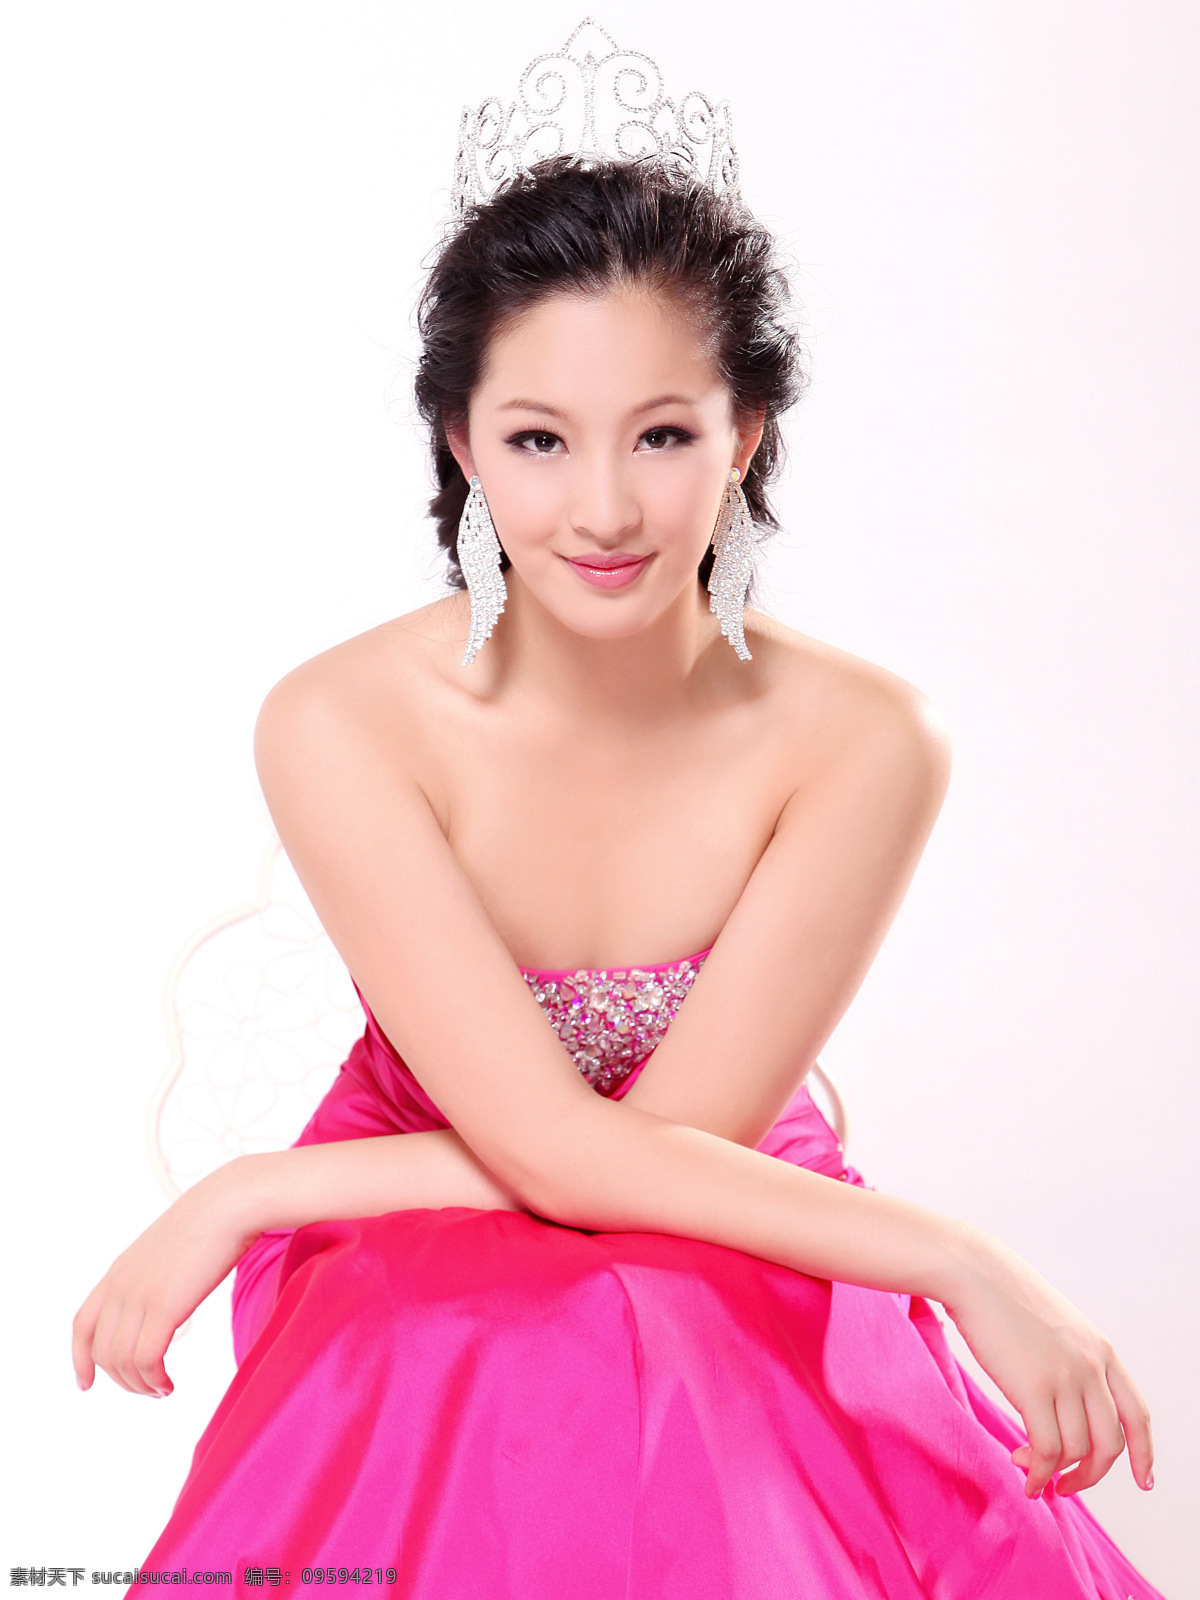 崔安娜 美国 华裔 小姐 冠军 获奖照 明星偶像 人物图库